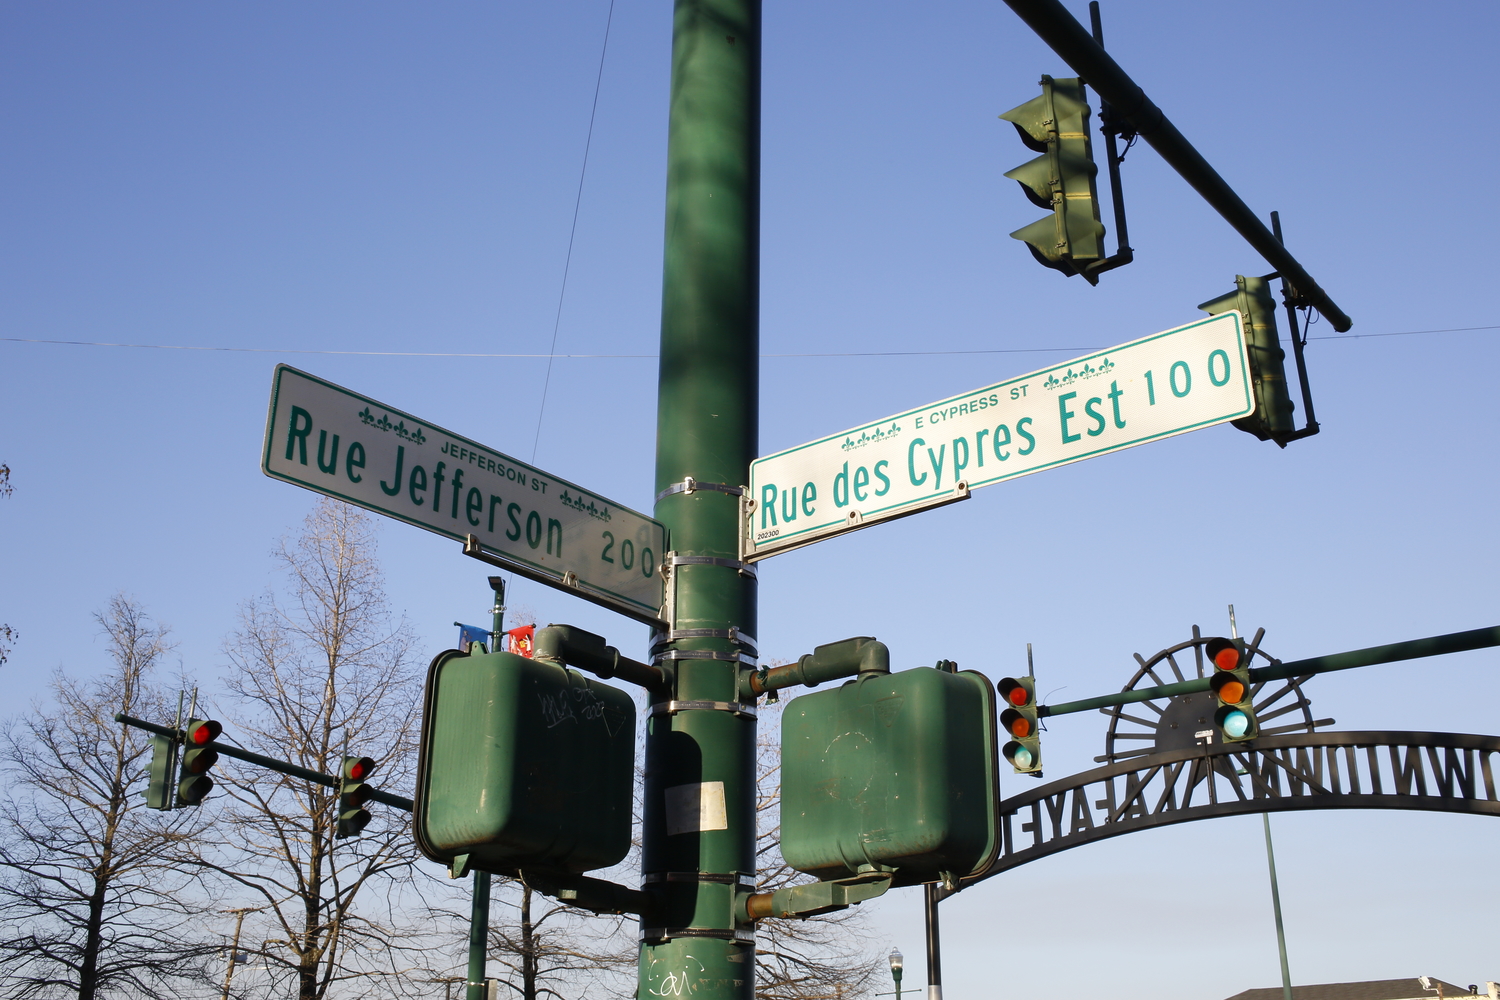 Les rues sont indiquées en français © Globe Reporters